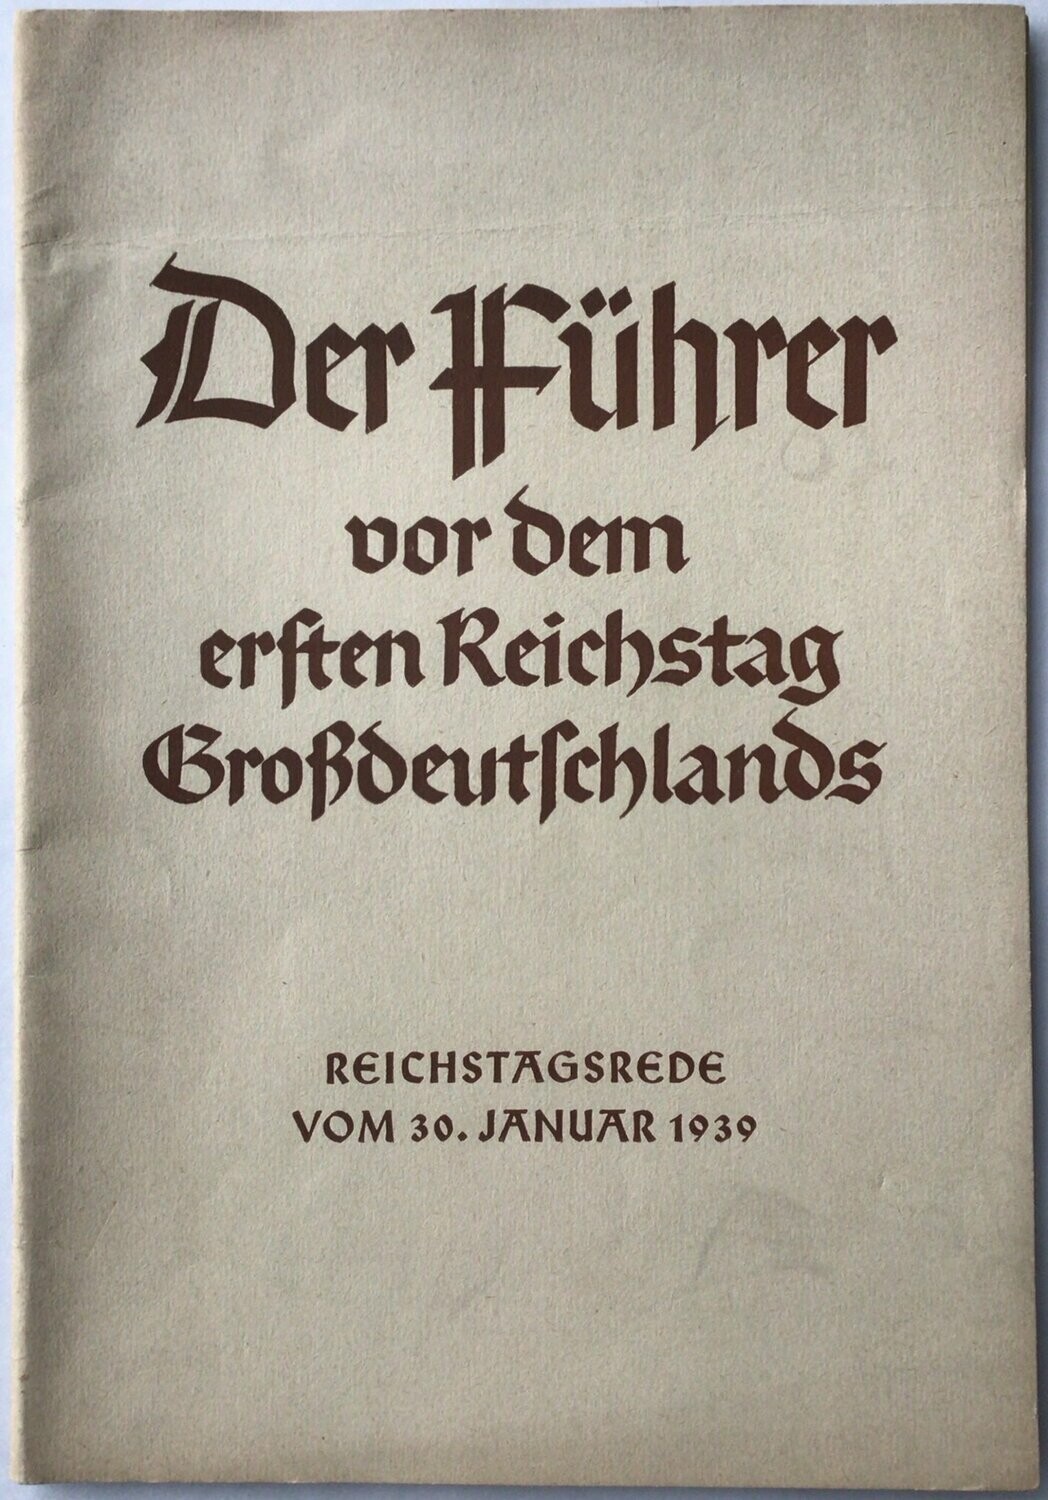 Der Führer vor dem ersten Reichstag Großdeutschlands